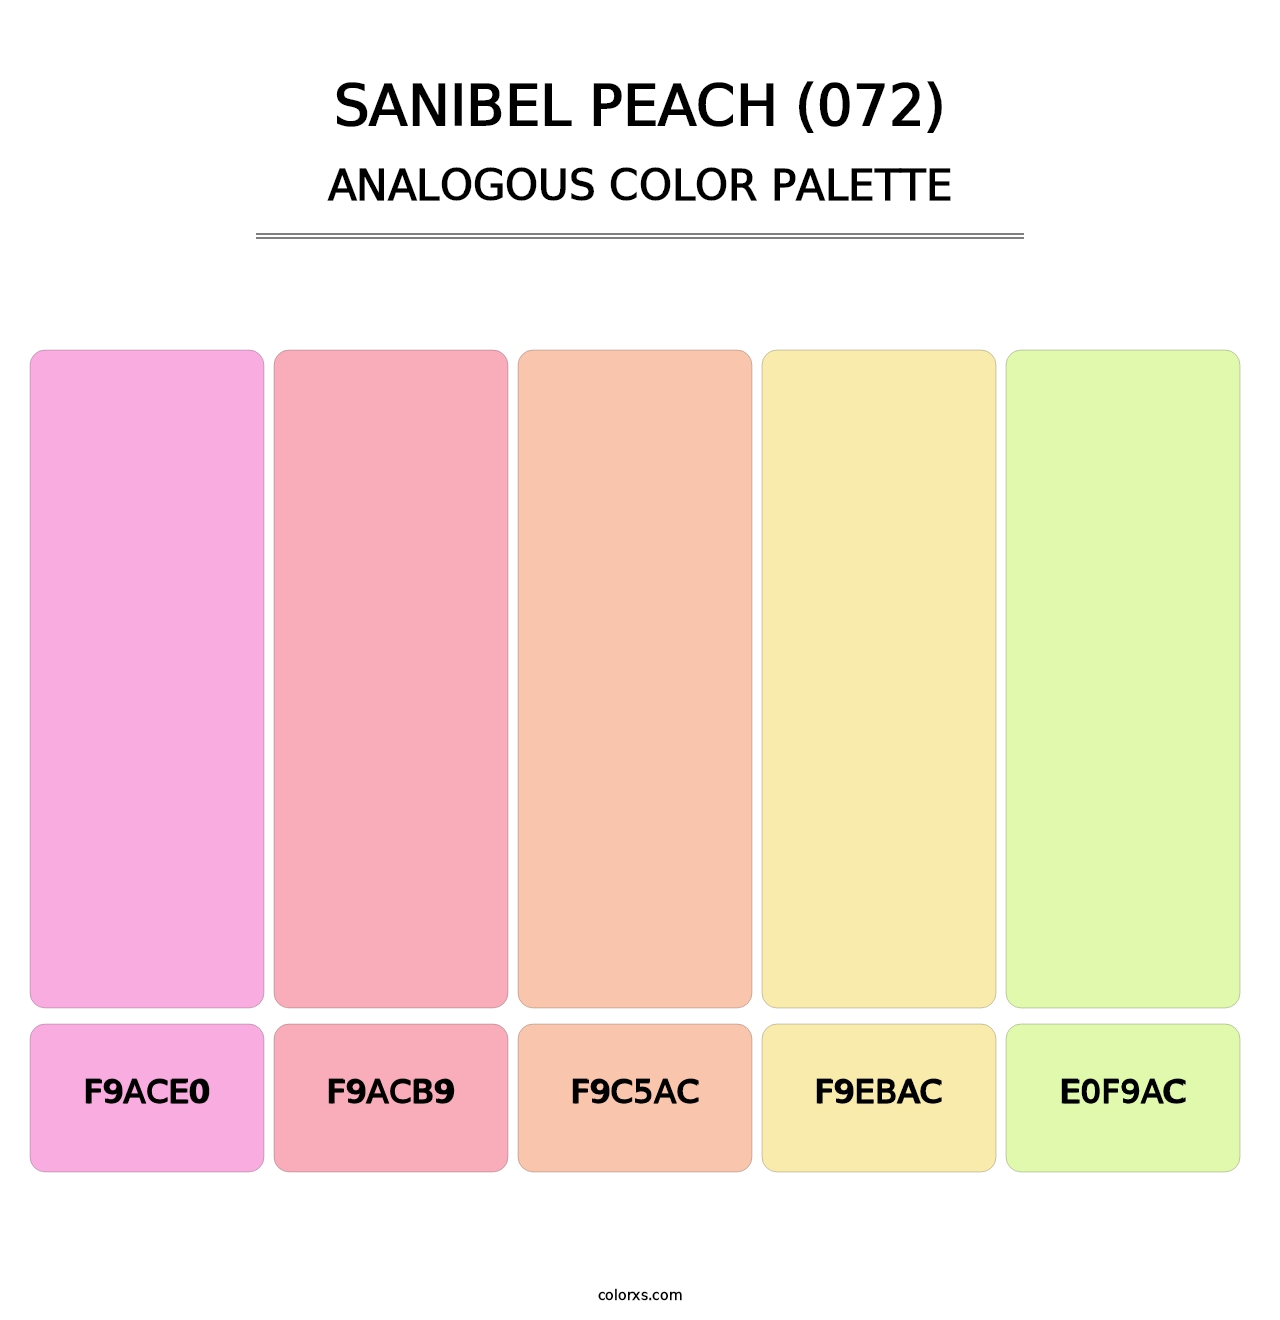 Sanibel Peach (072) - Analogous Color Palette